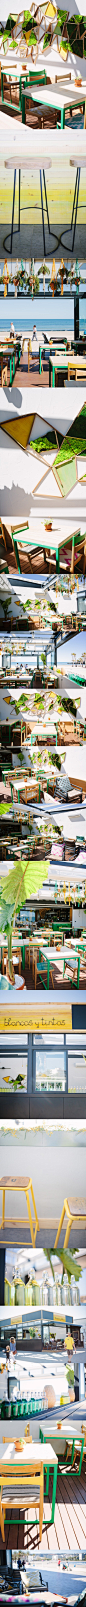 Blancos y Tintos特色餐厅空间设计